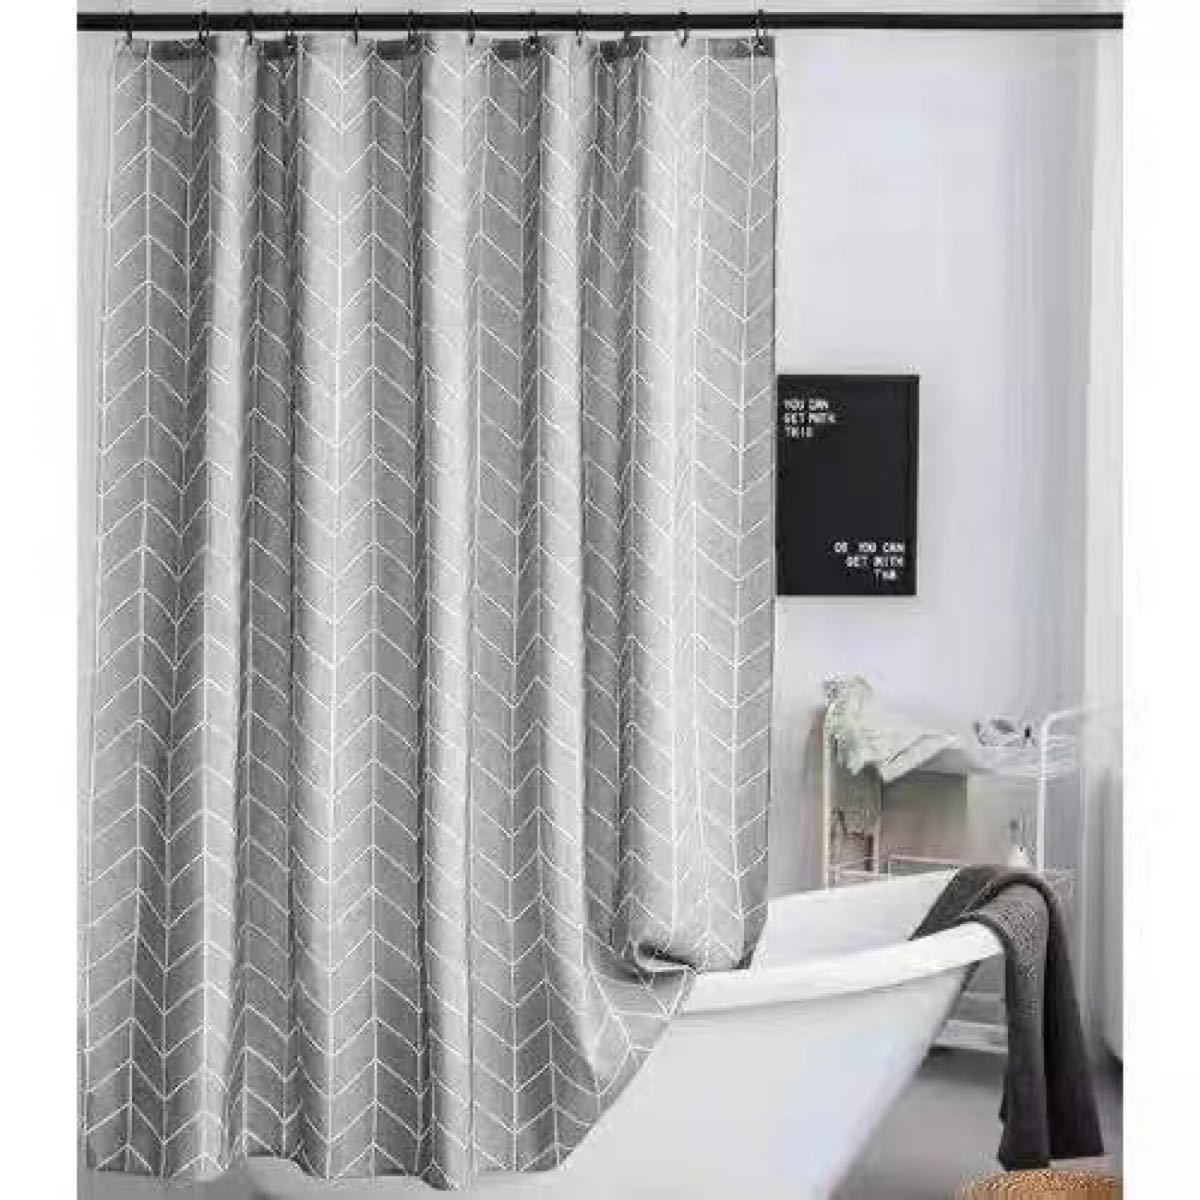 シャワーカーテン 120*180 防カビ 防水 無臭ポリエステル製 バスカーテン